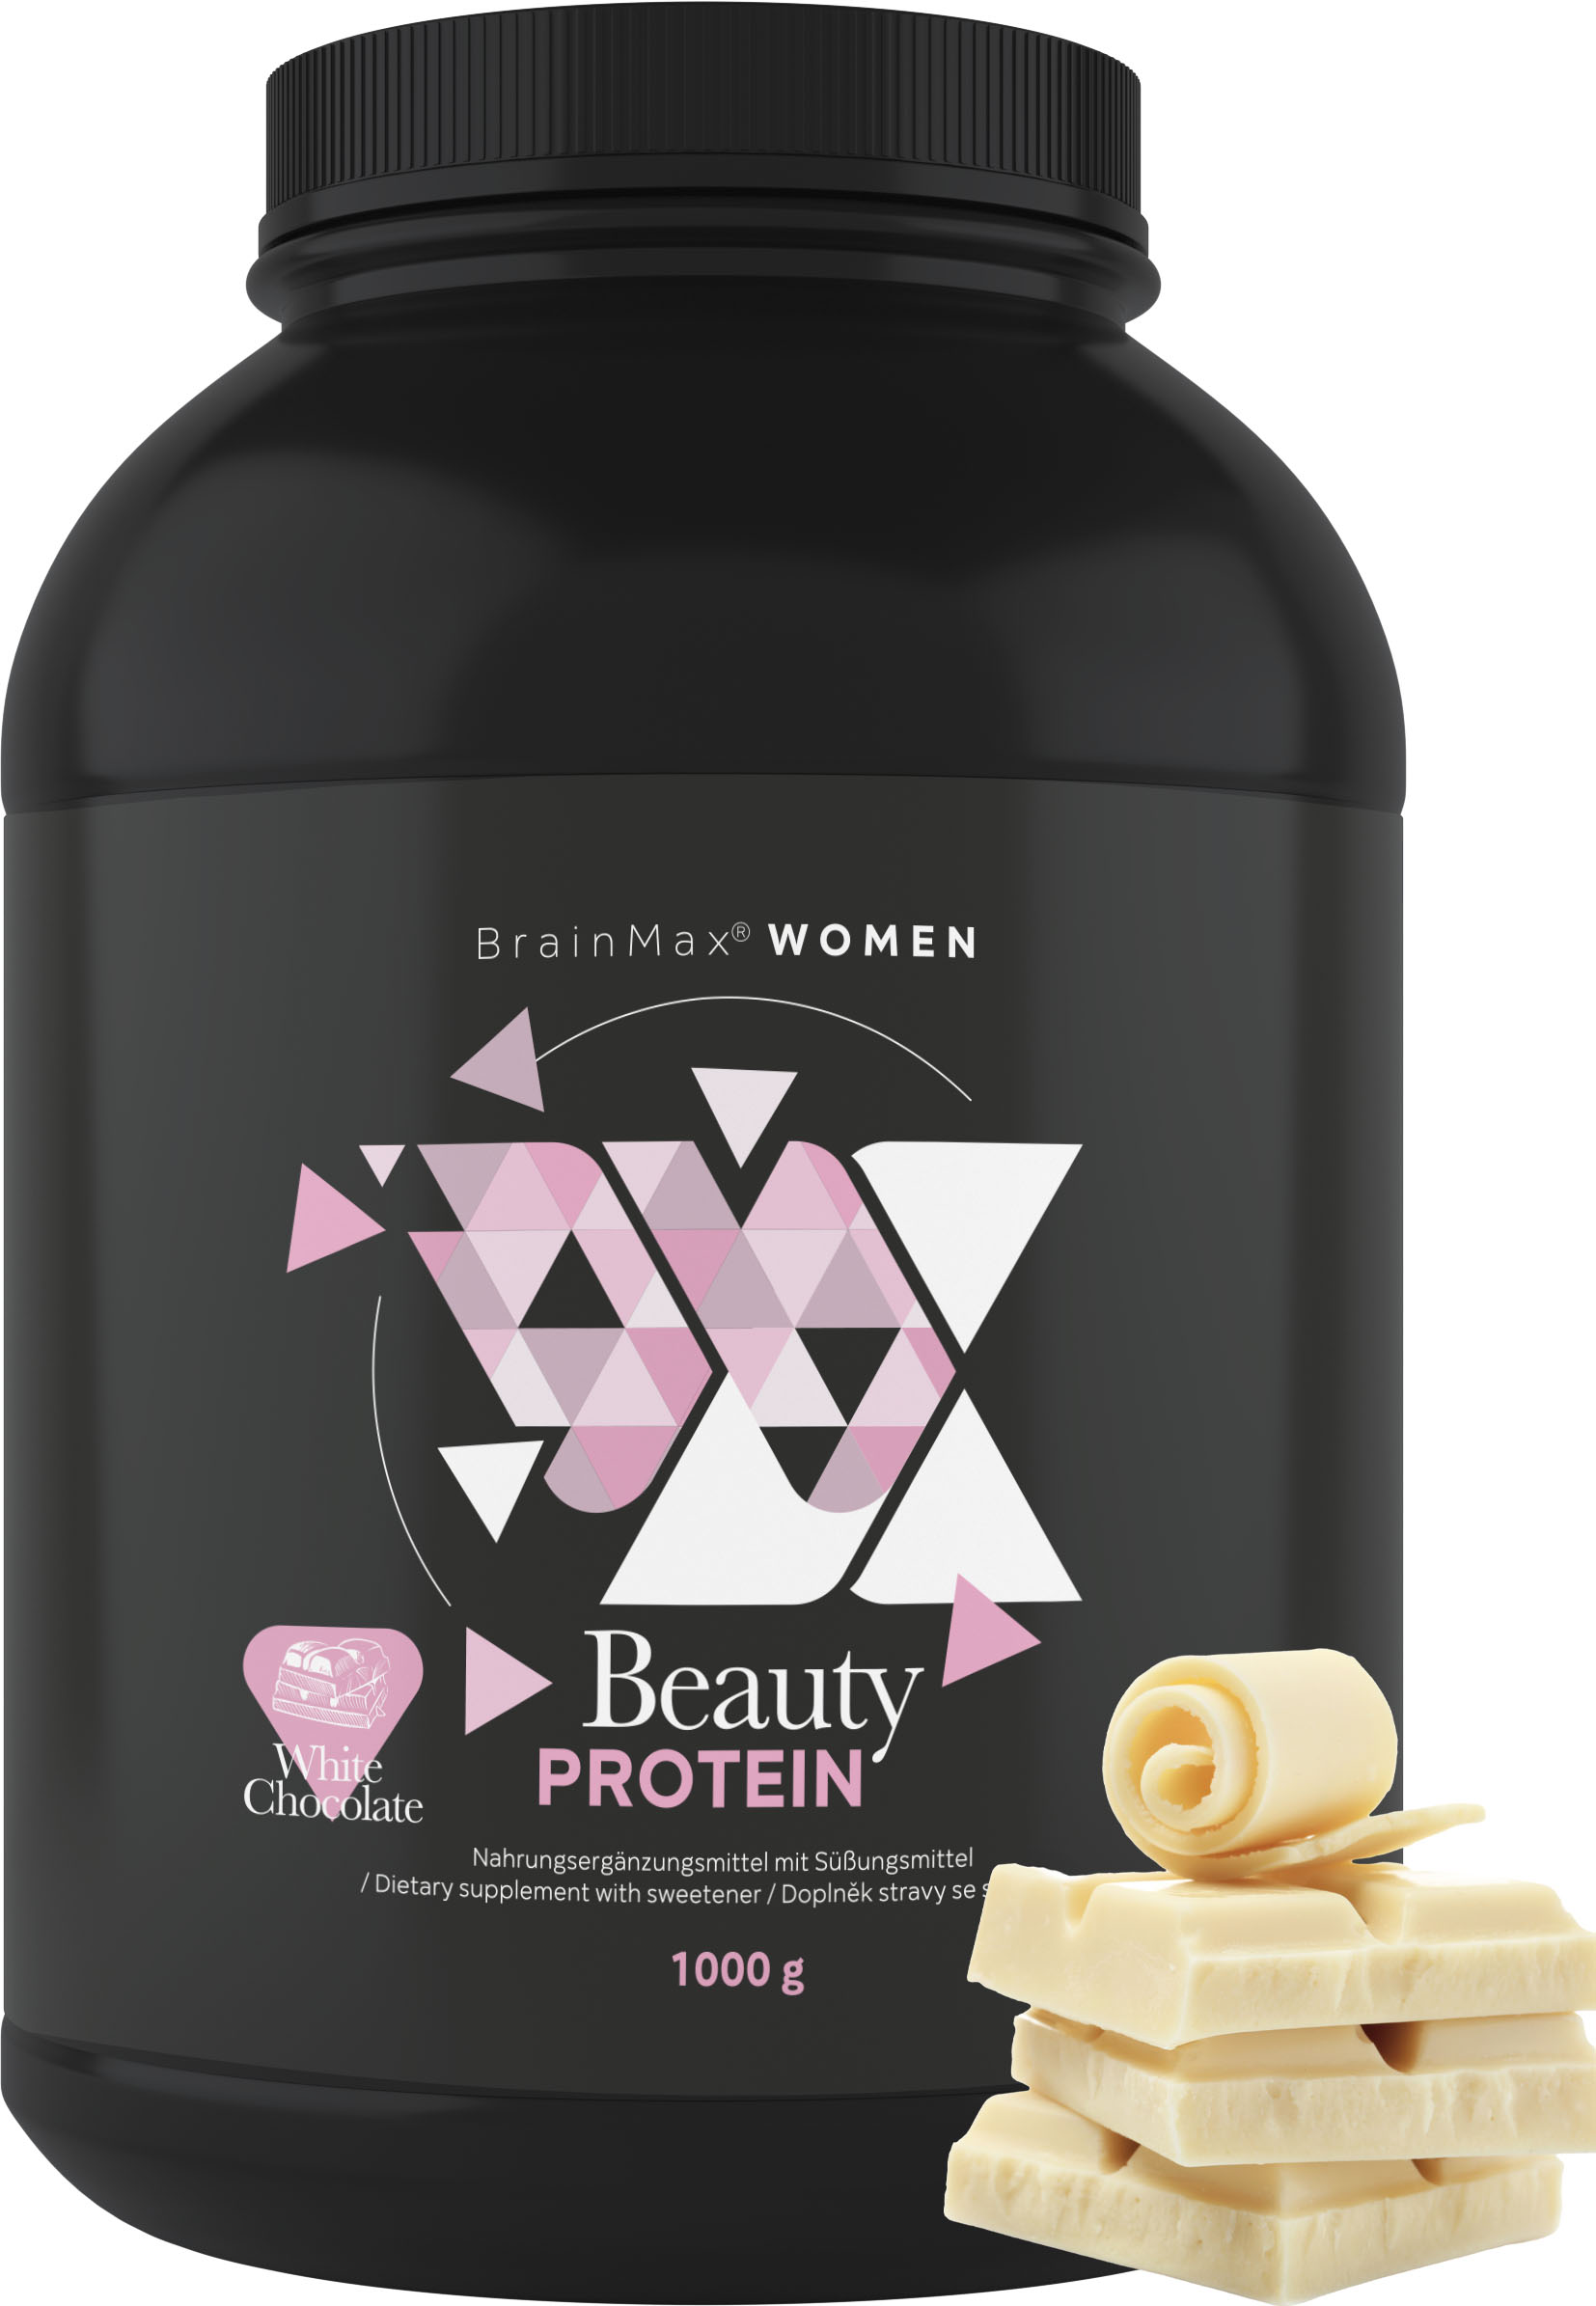 BrainMax Women Beauty Protein, protein pro ženy s kolagenem, keratinem a vitamíny, 1000 g Příchuť: Bílá čokoláda Nativní syrovátkový protein nejvyšší kvality s prémiovým kolagenem Naticol® a dalšími složkami, 28 dávek, doplněk stravy